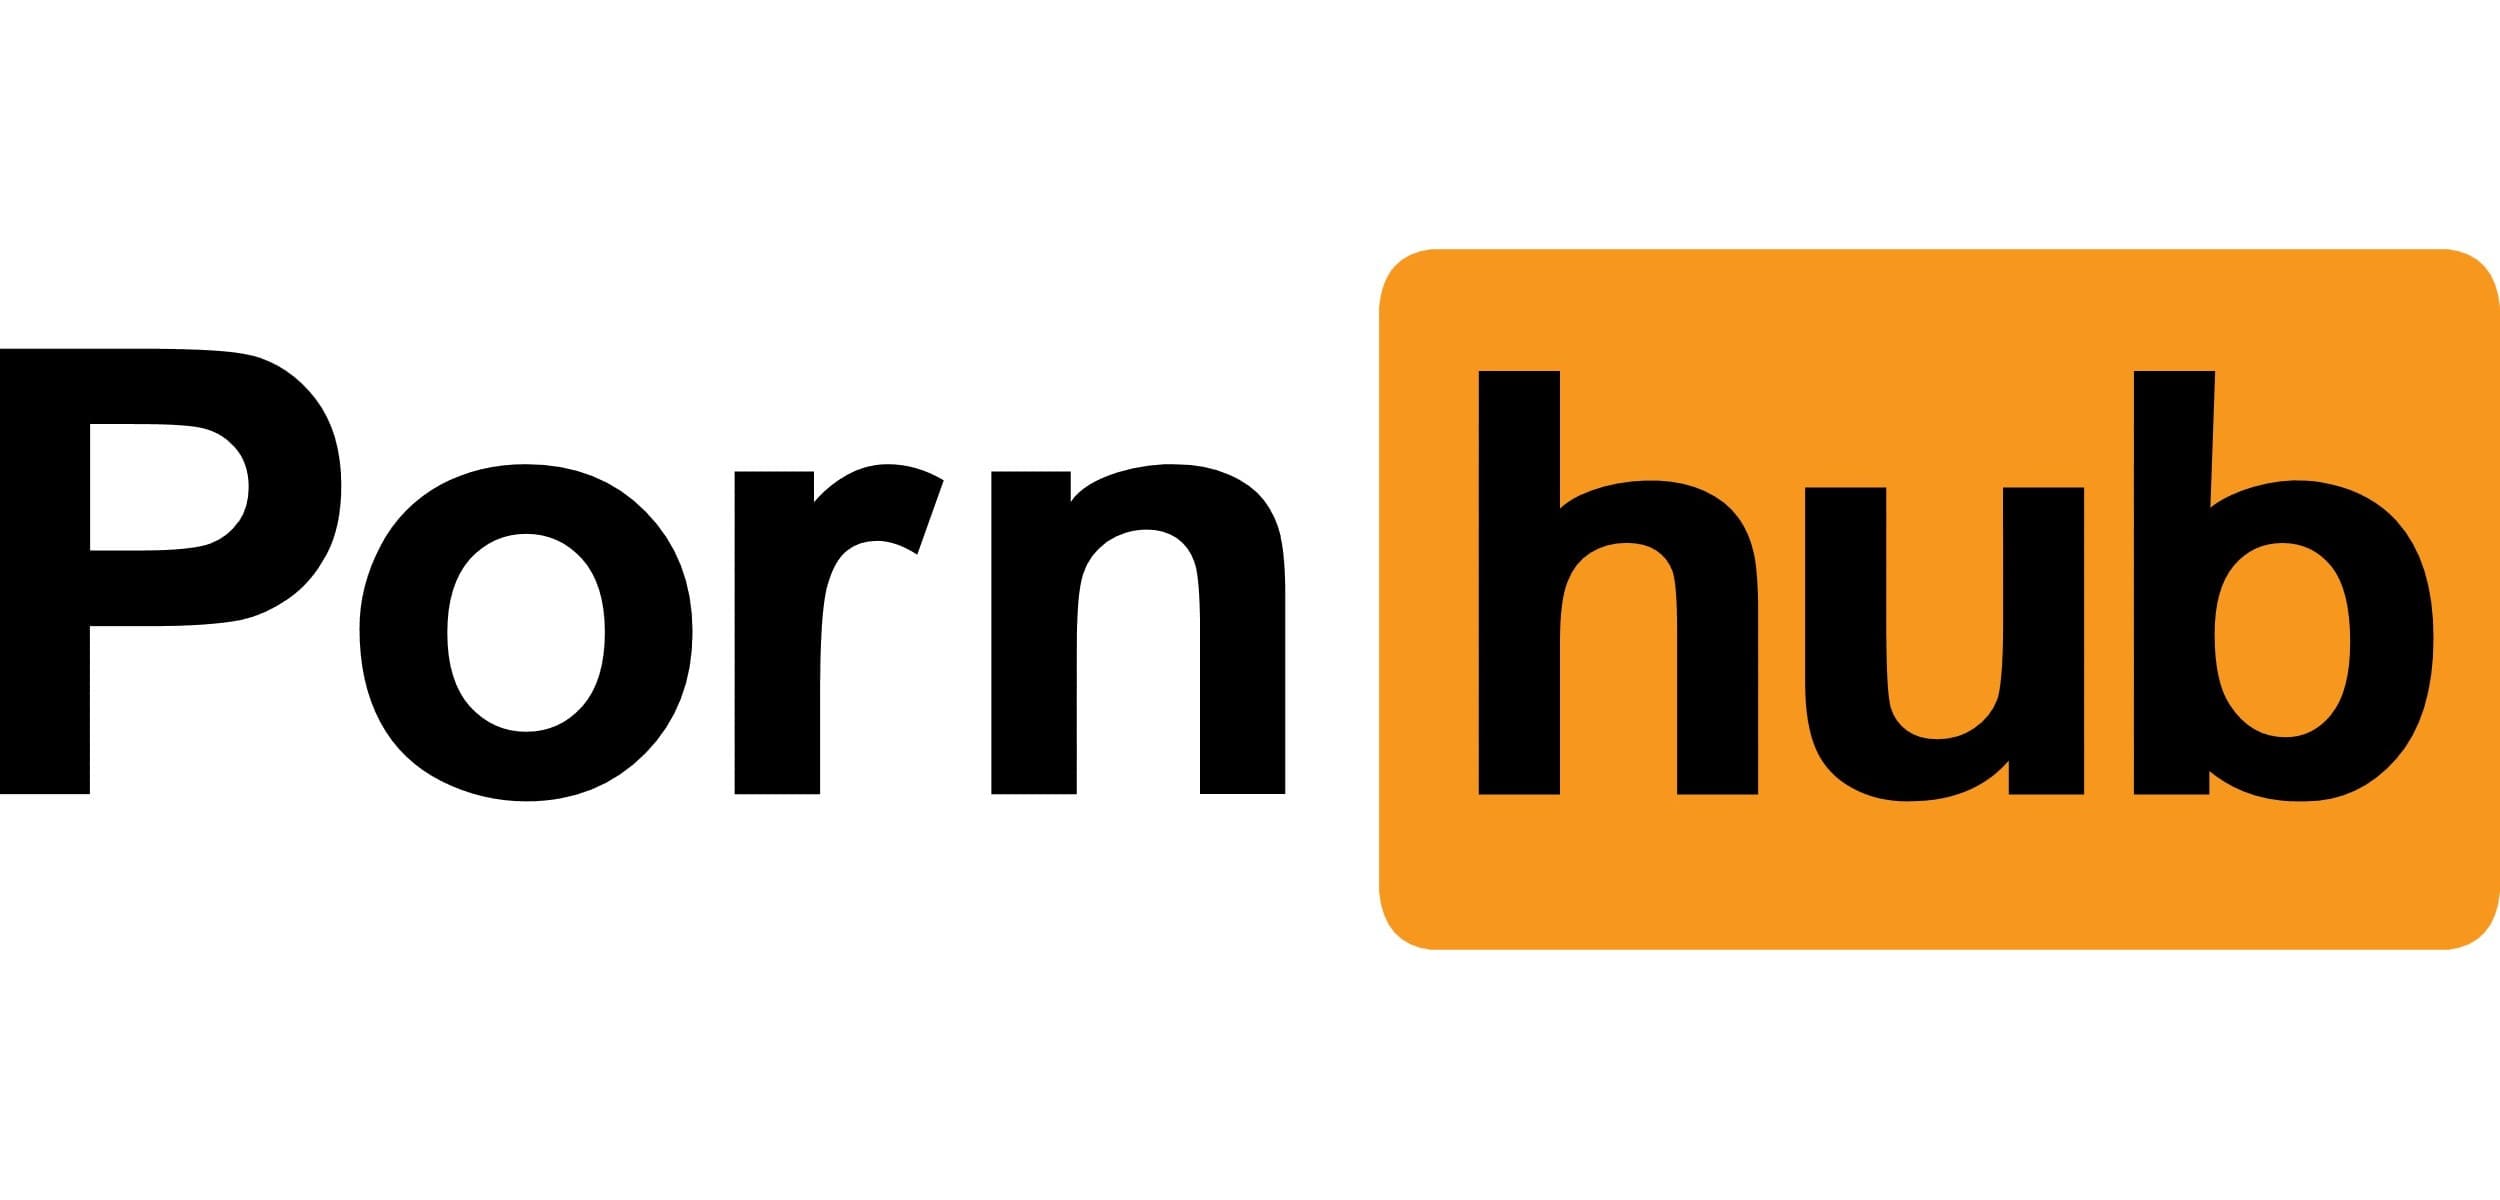 Porn site logo